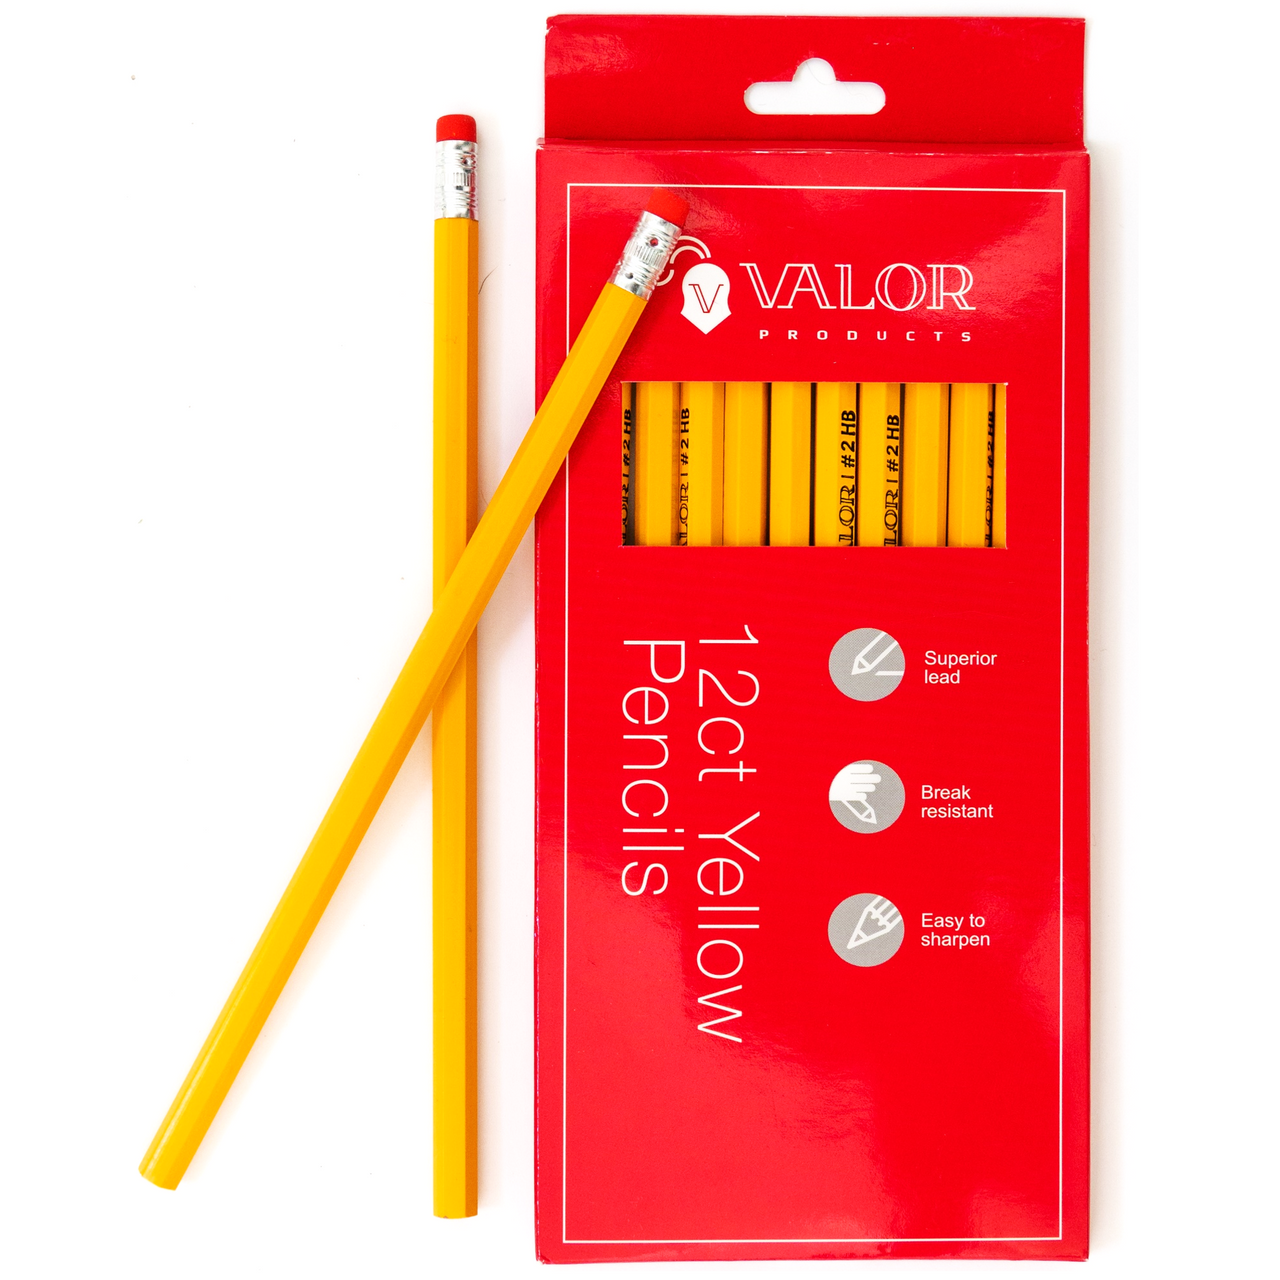 Lumber Marking Crayon - Yellow - 12-Pack